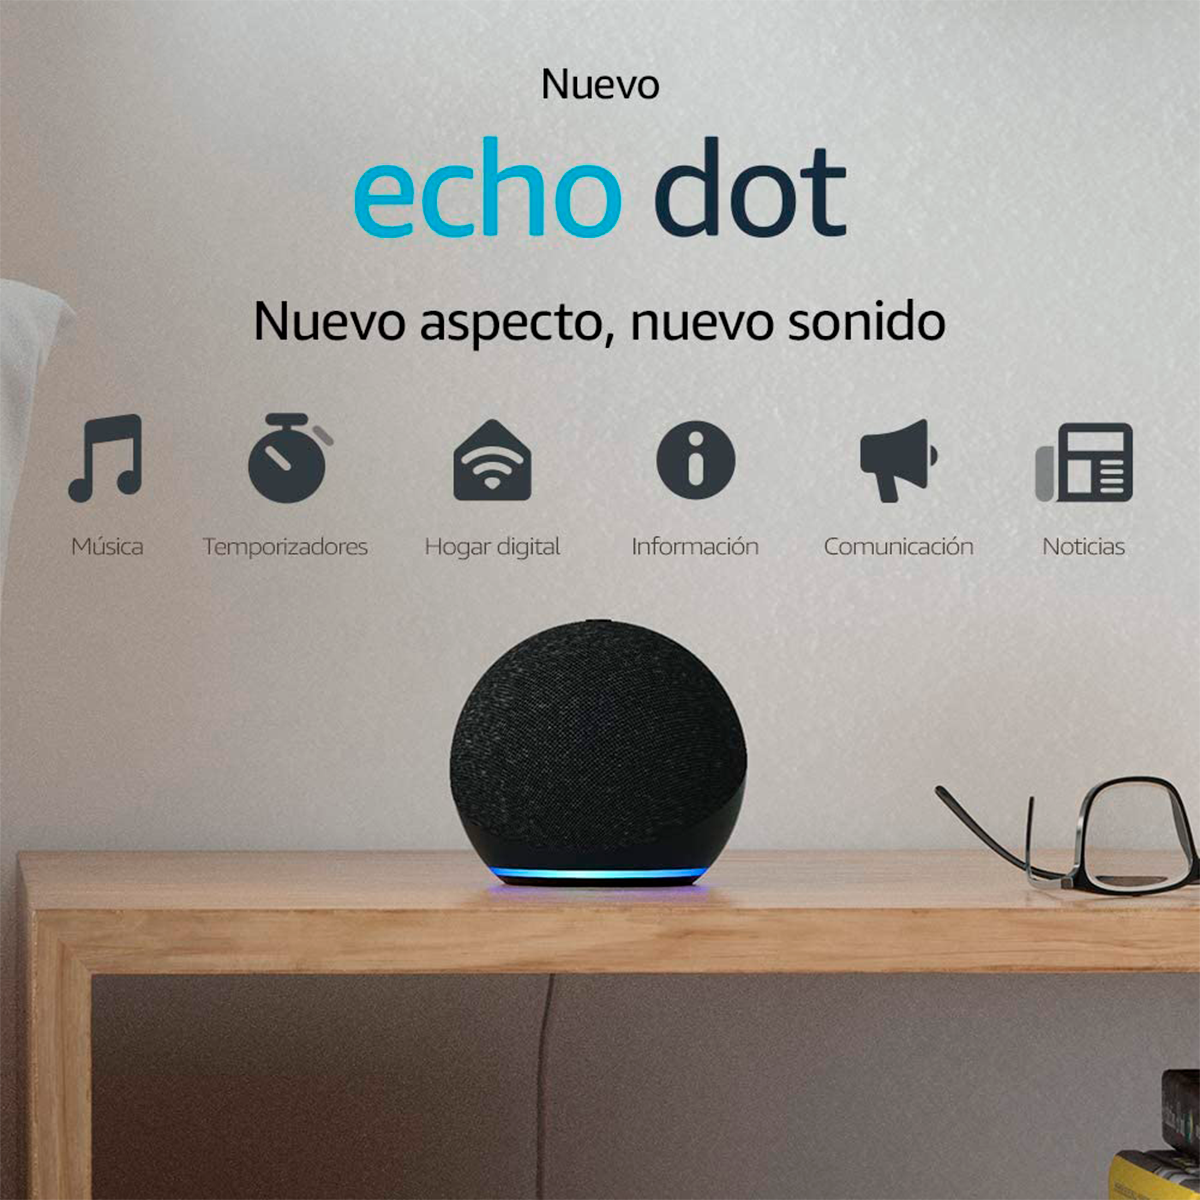 Alexa Echo Dot 5ta generación – PlanetCompu – componentes de PC